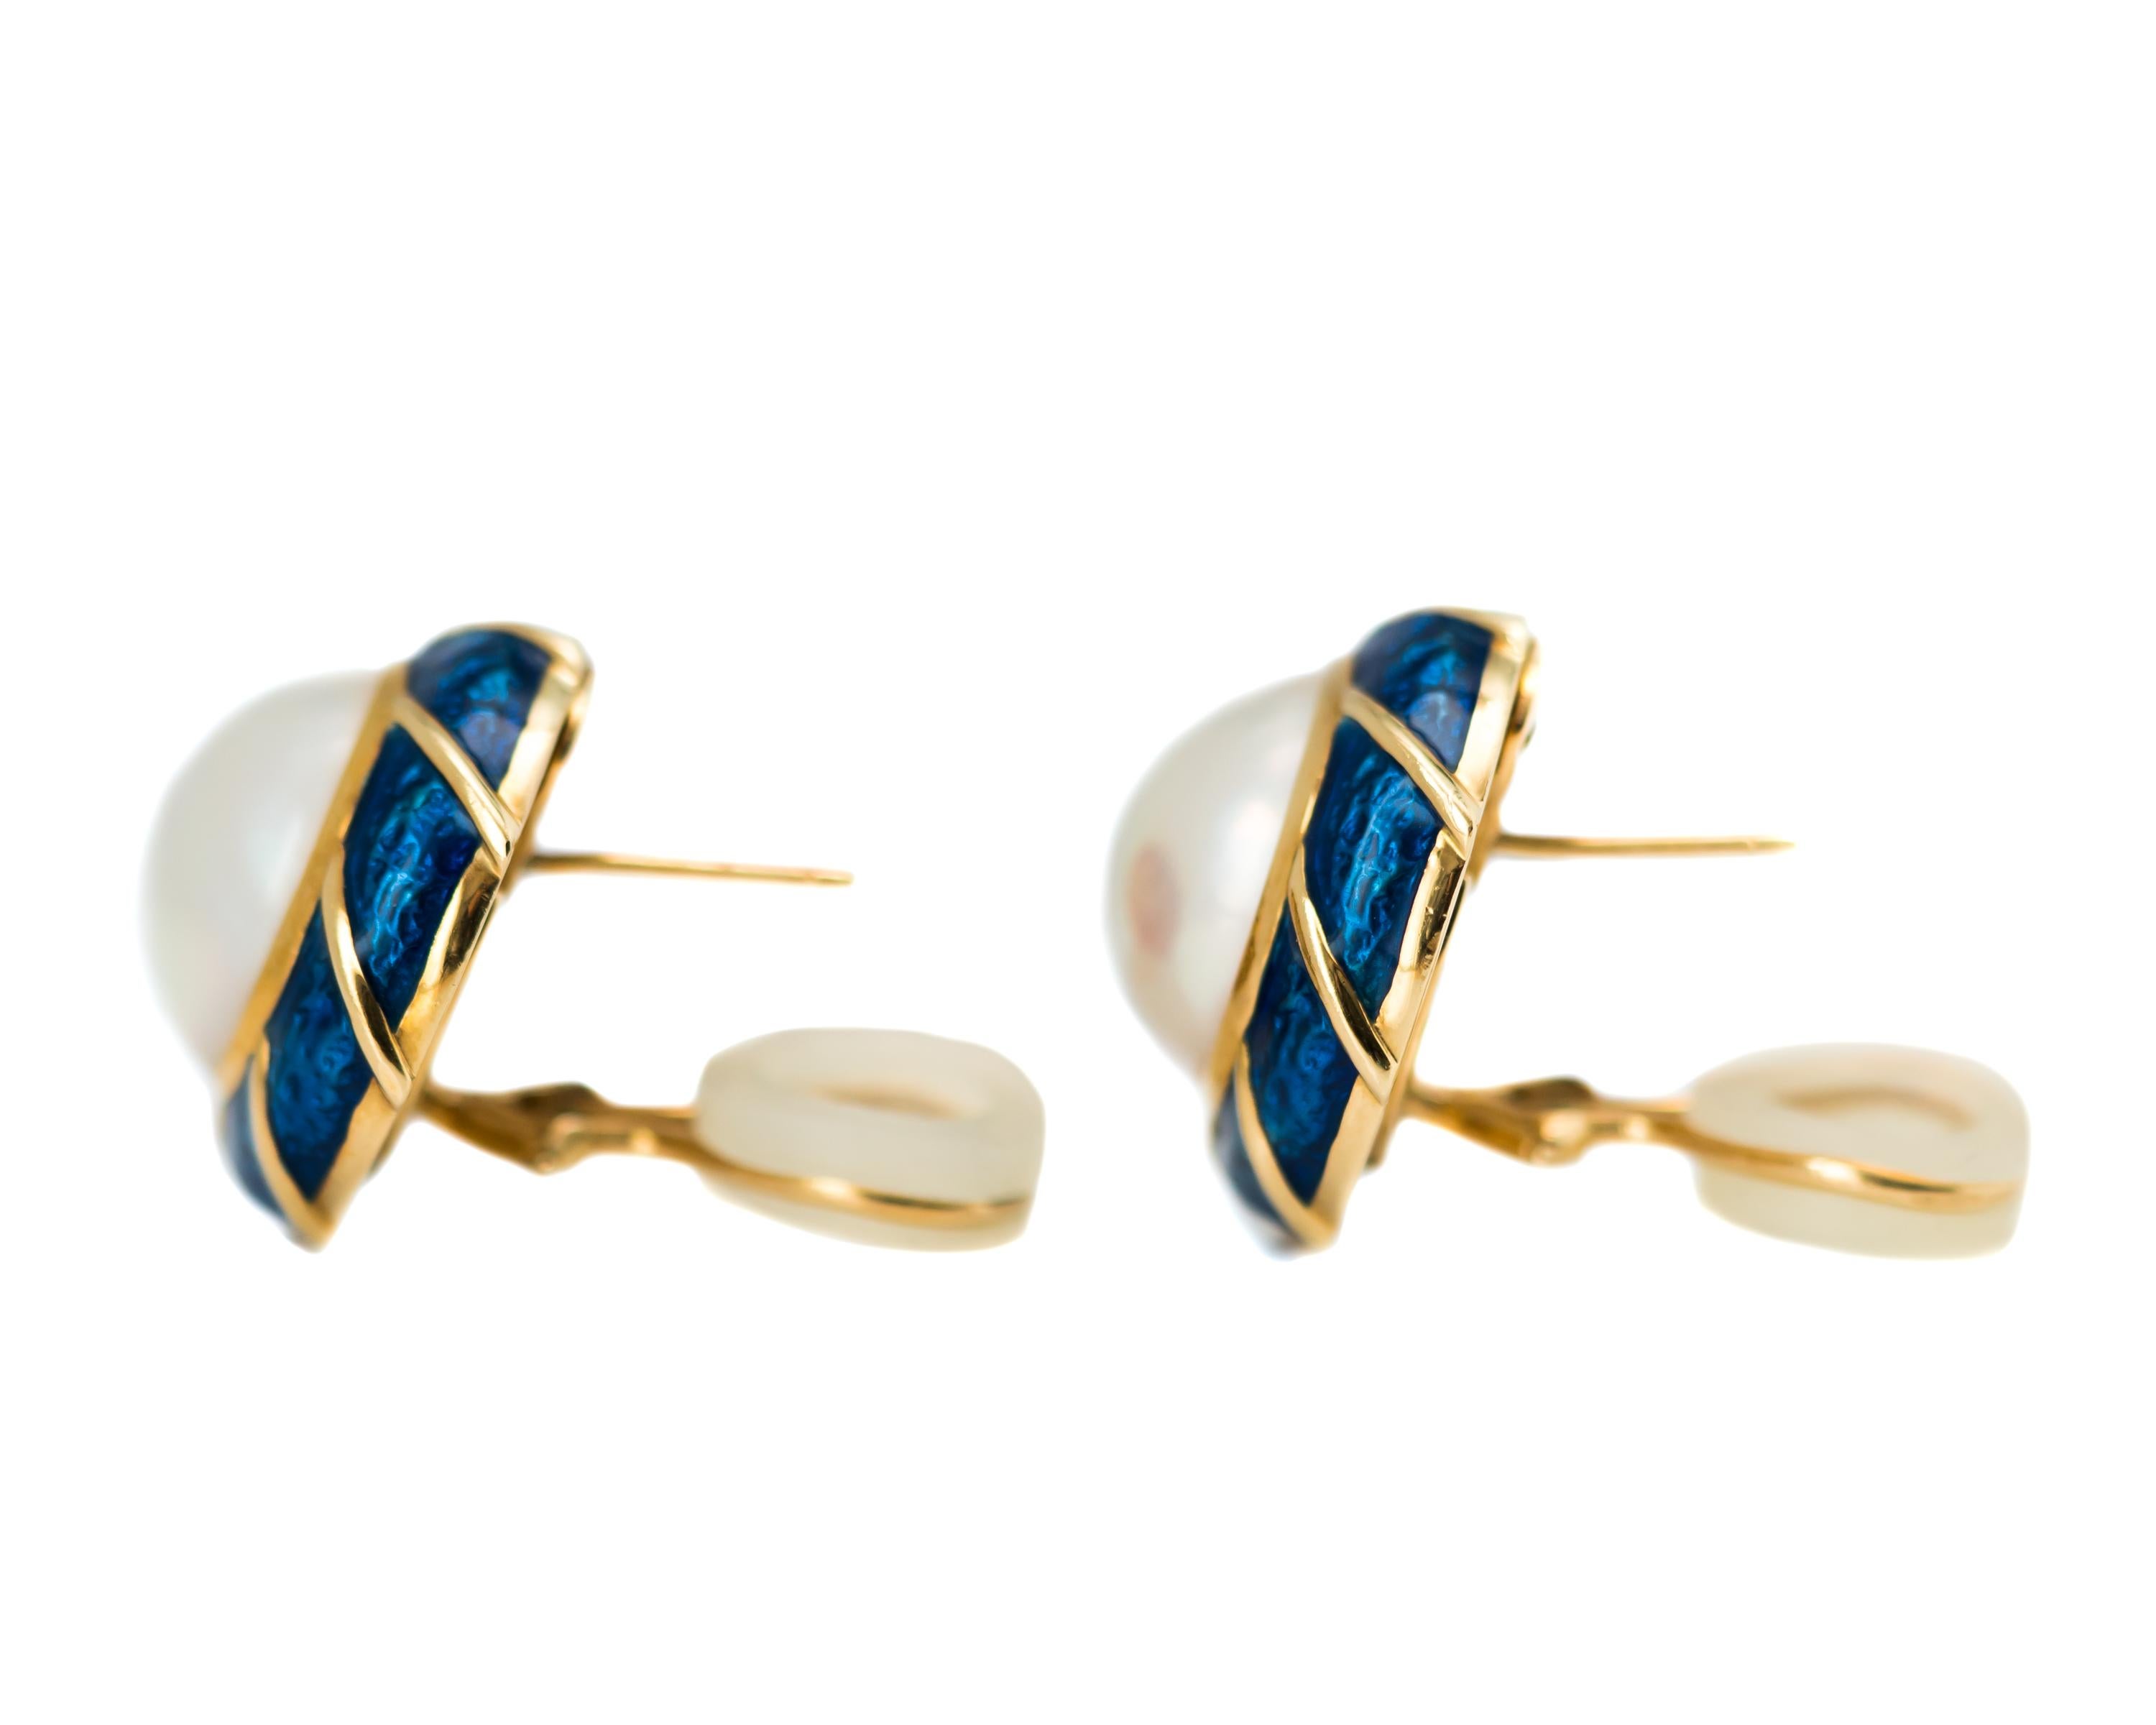 Tiffany & Co. Pearl and Enamel 18 Karat Yellow Gold Earrings 2